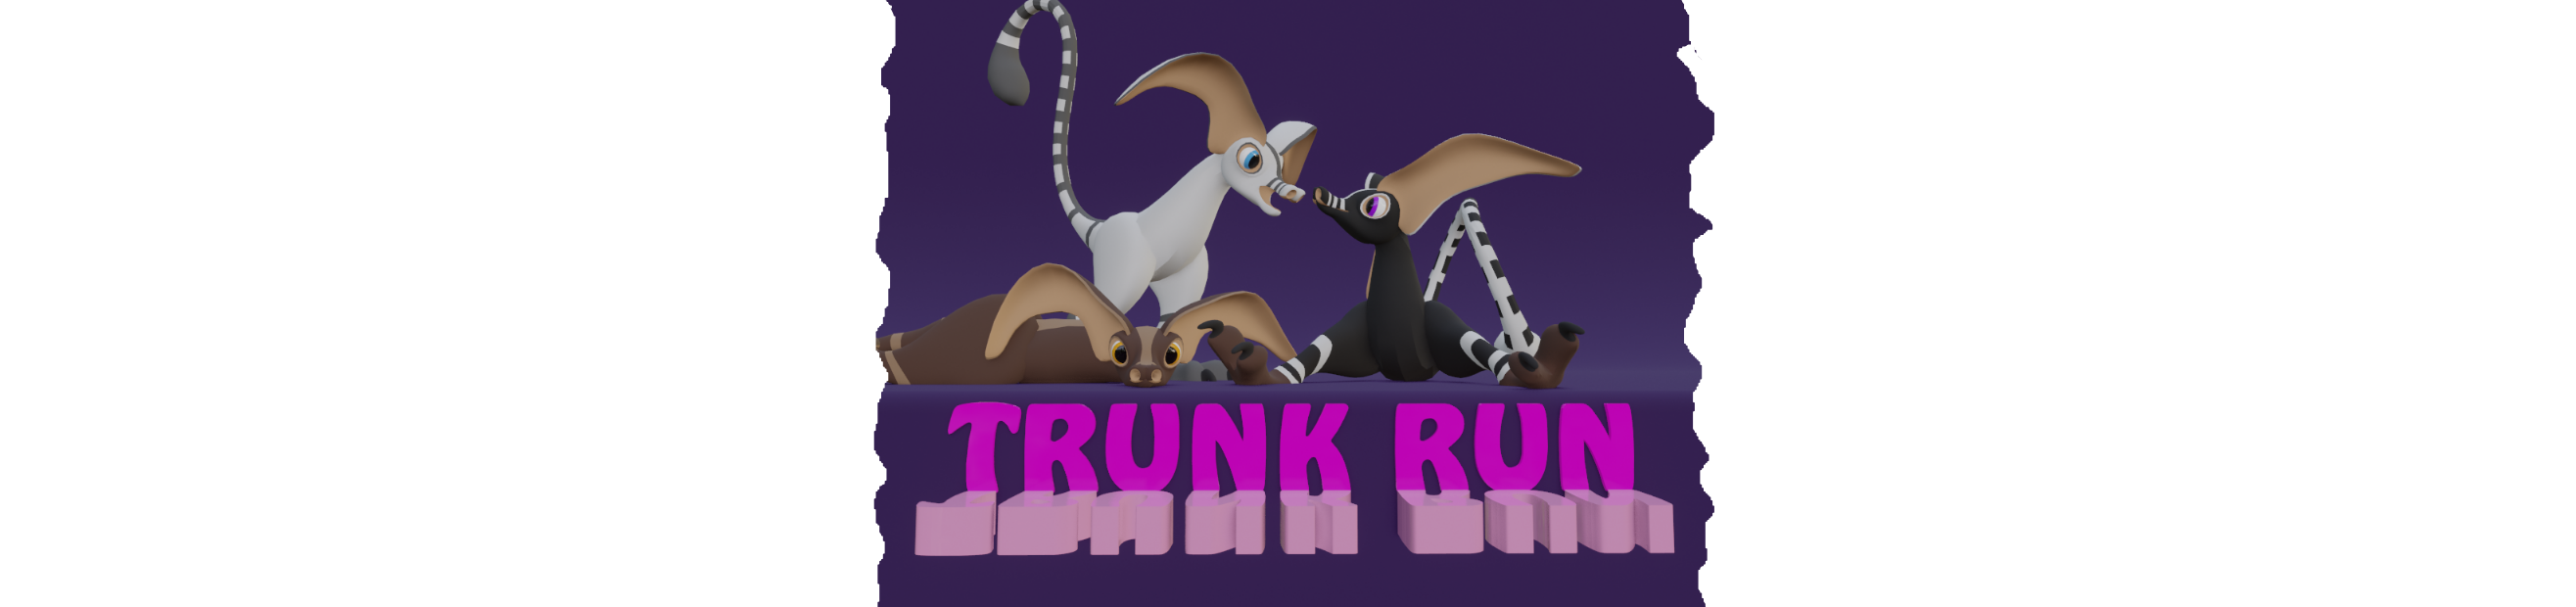 Trunk Run